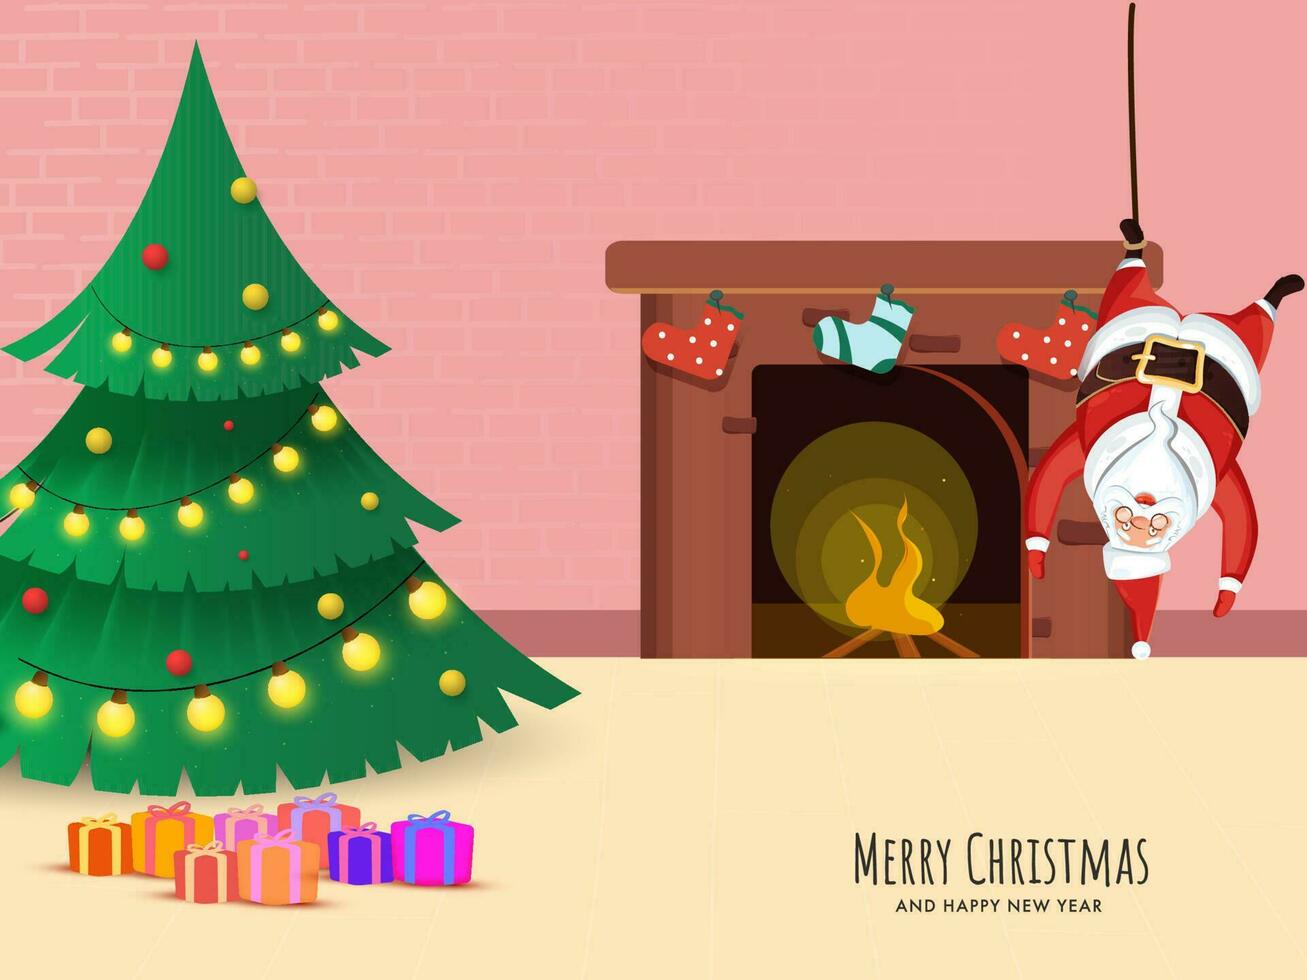 décoratif Noël arbre avec cadeau des boites, Père Noël claus pendaison à l'envers vers le bas et cheminée sur le occasion de joyeux Noël et Nouveau an. vecteur